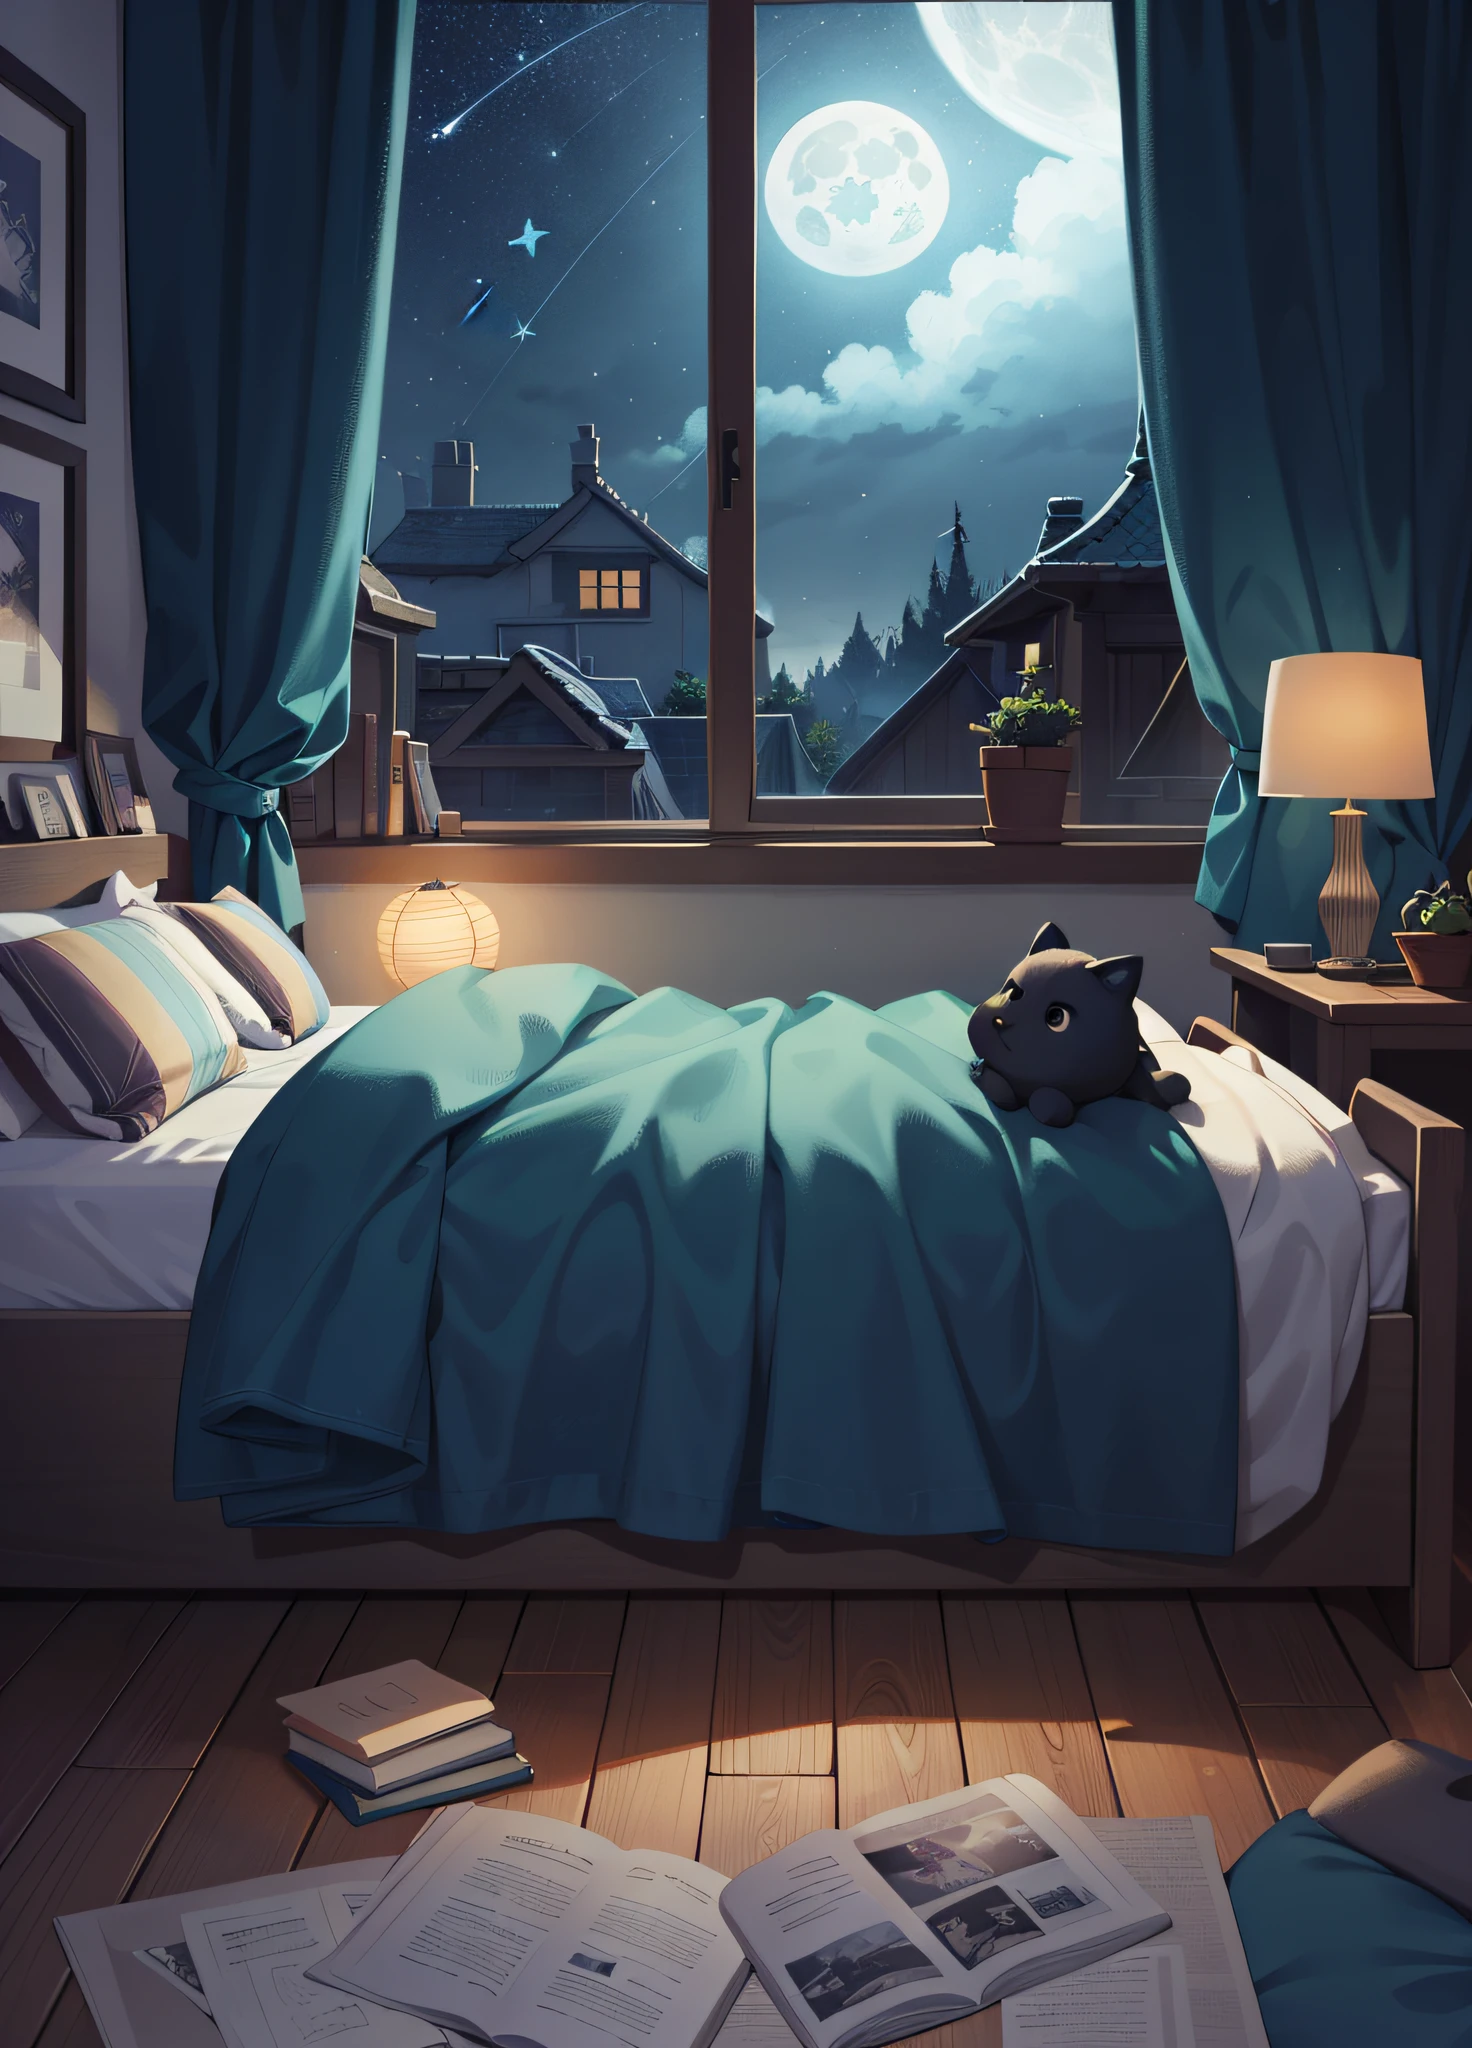 A bedroom window with céu noturno, ilustração de lua cheia e estrelas no céu (ilustração 8k), (melhor qualidade) (Detalhes intrincados) (8K) (céu noturno)